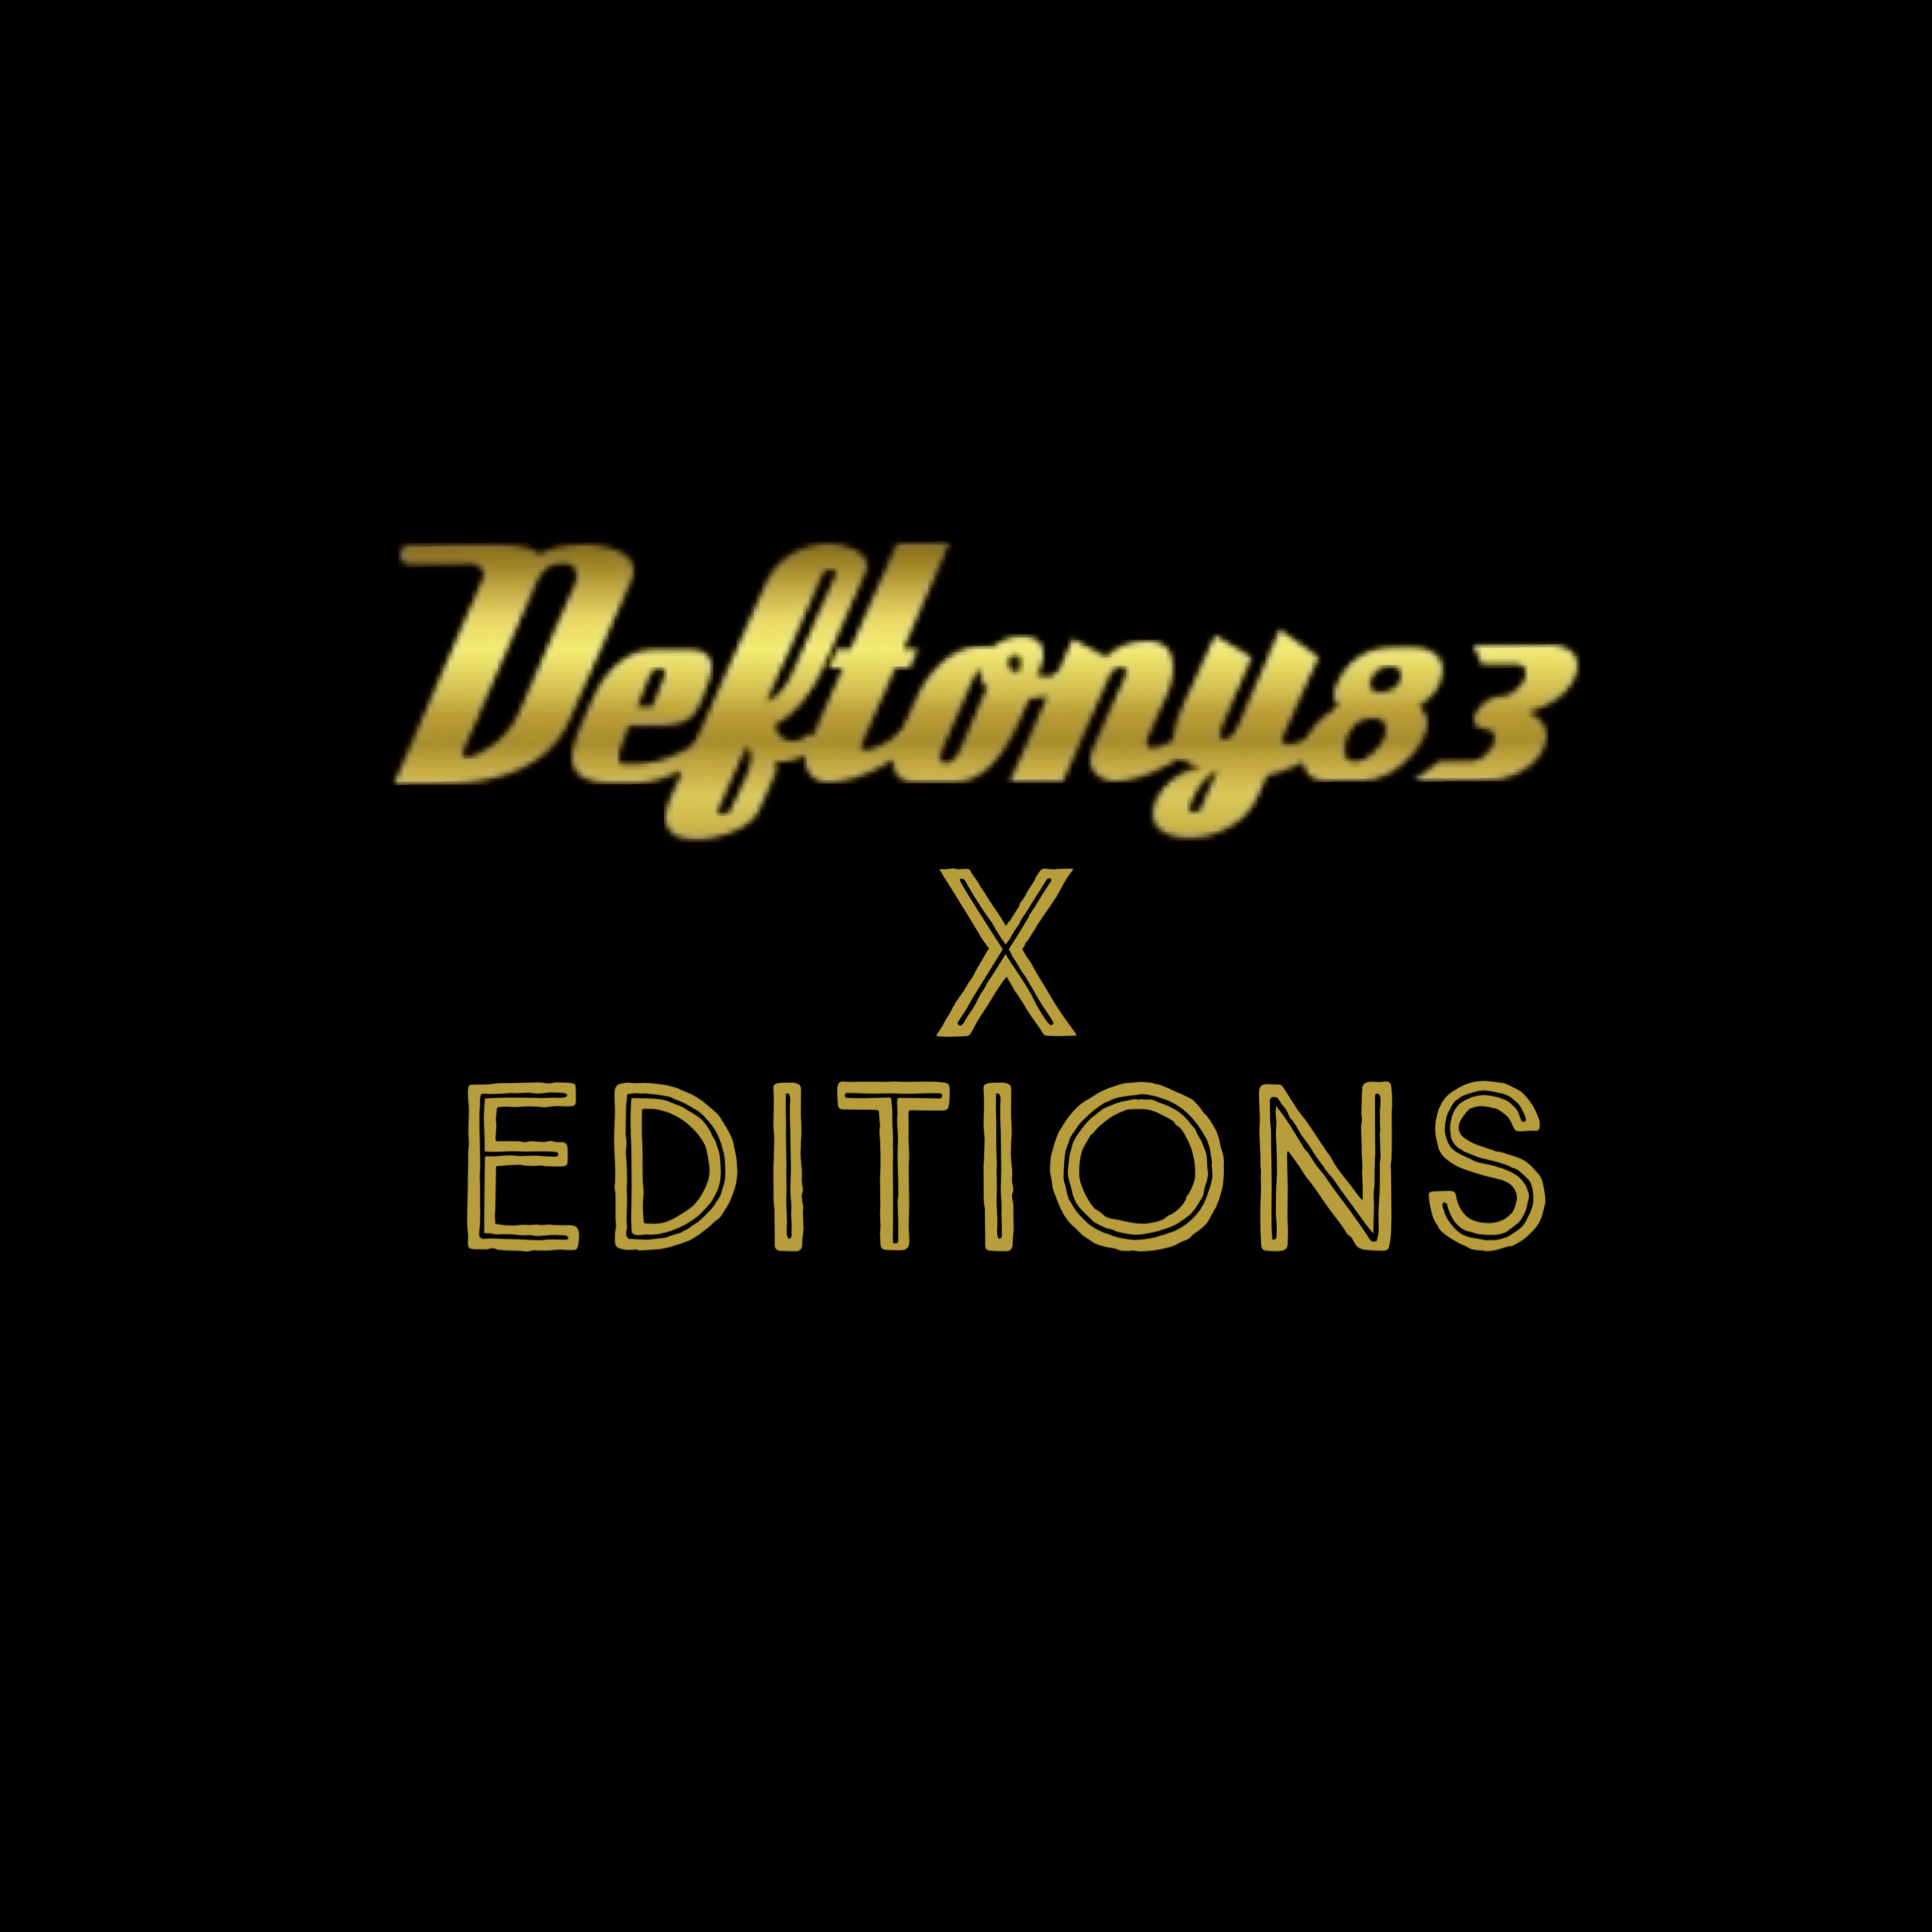 Deftony83 x Editions thumbnail thumbnail